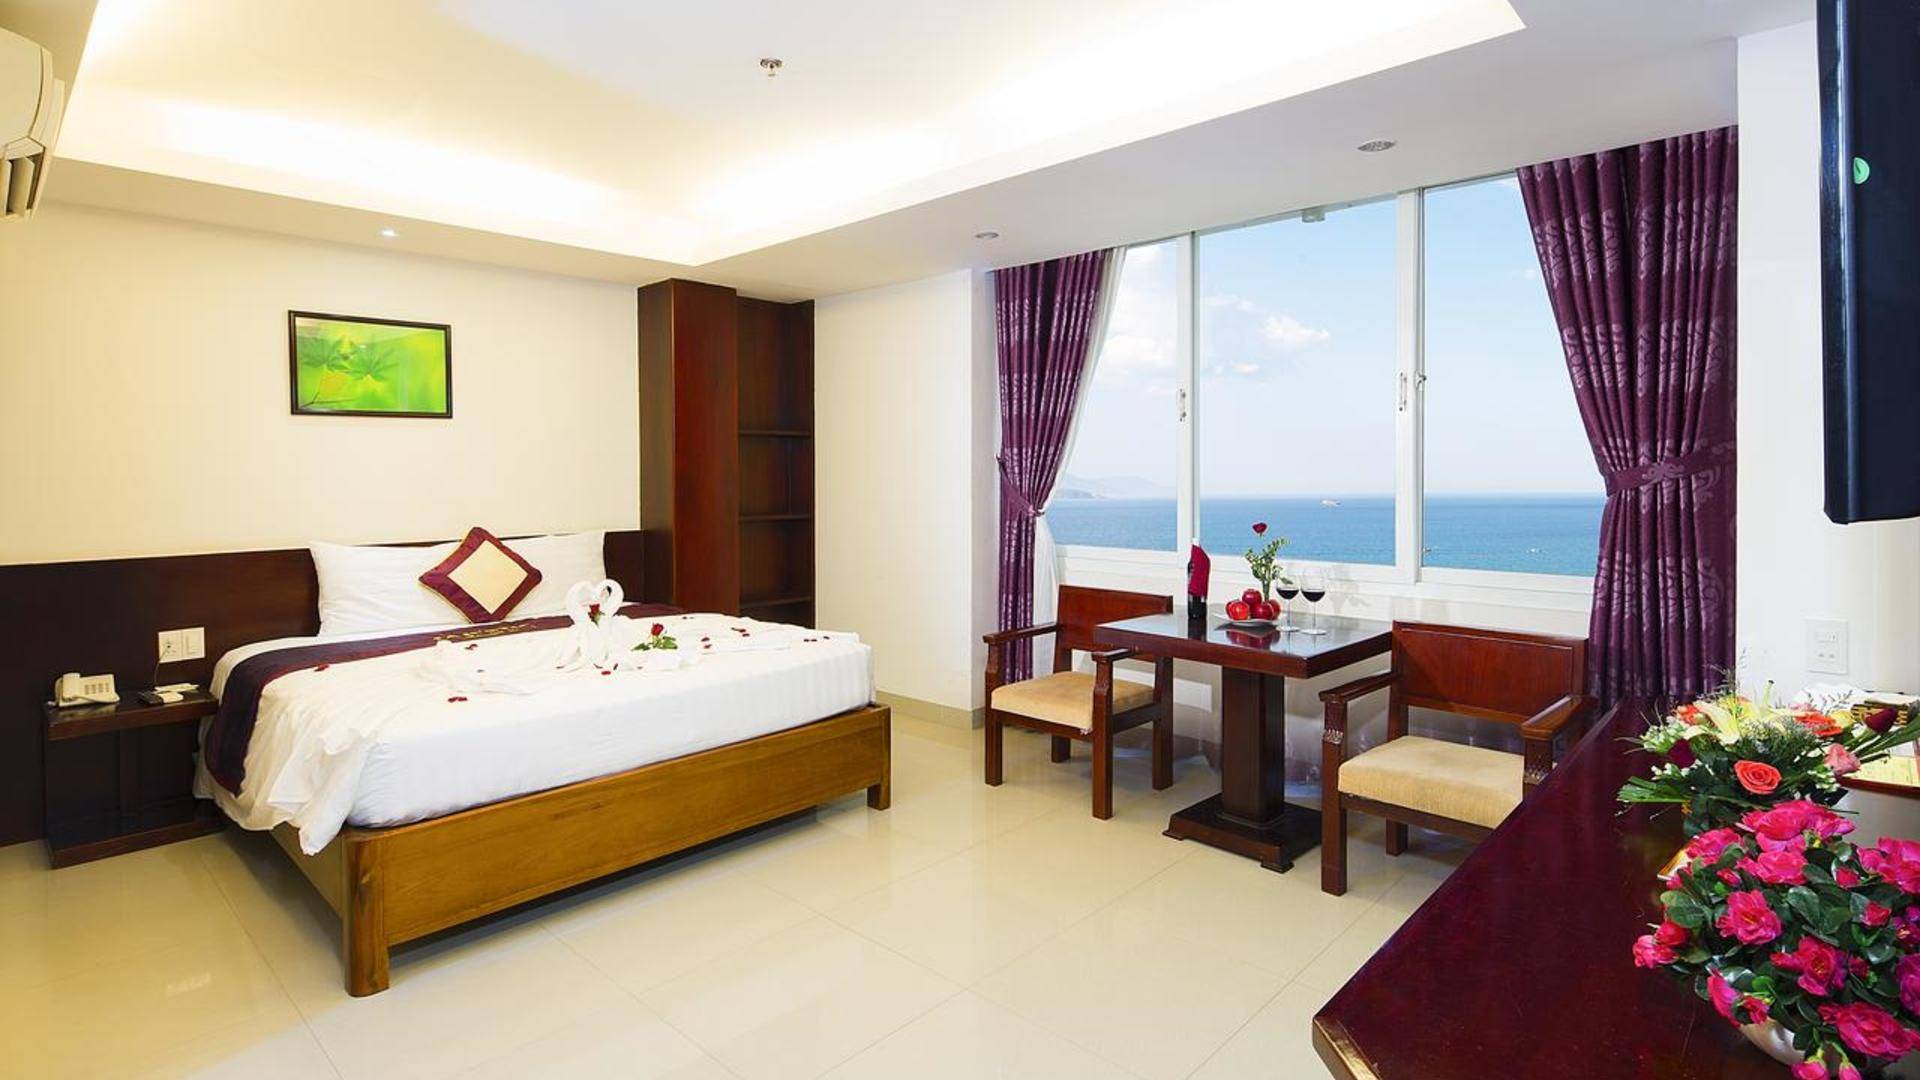 Отель art boutique hotel 2** (нячанг / вьетнам) - отзывы туристов о гостинице описание номеров с фото